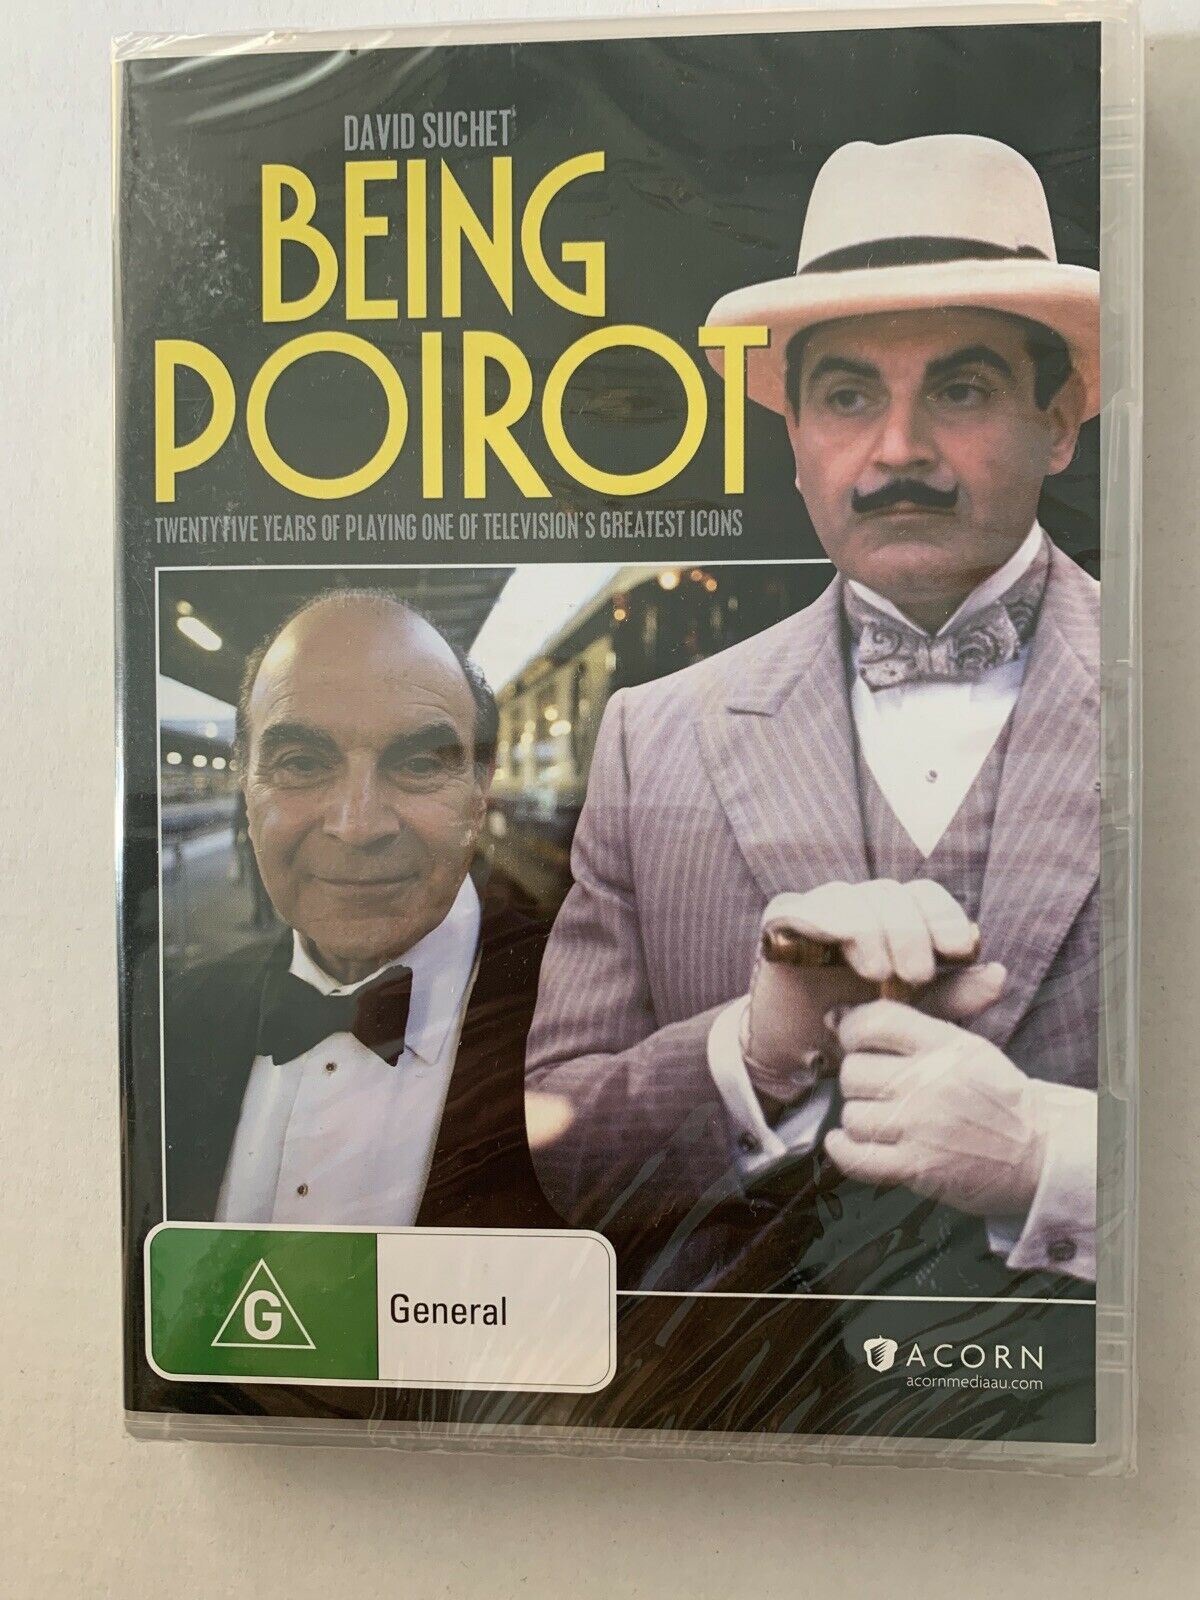 *New Sealed* Being Poirot (DVD, 2014) David Suchet. Region 4